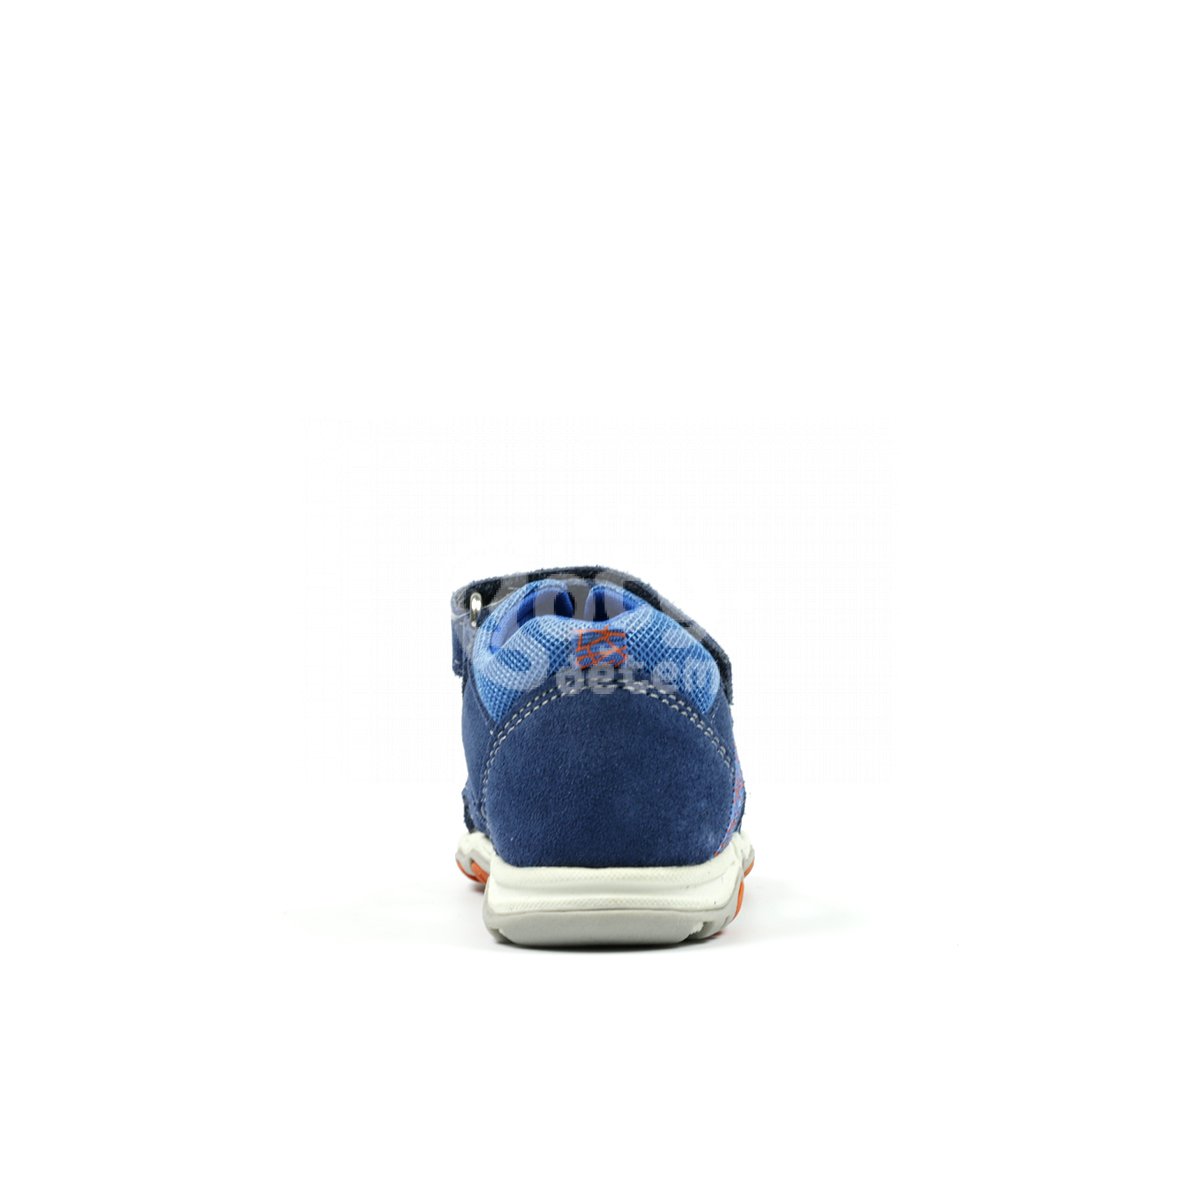 Kožené sandálky Richter 2350-3112-6821 modrá